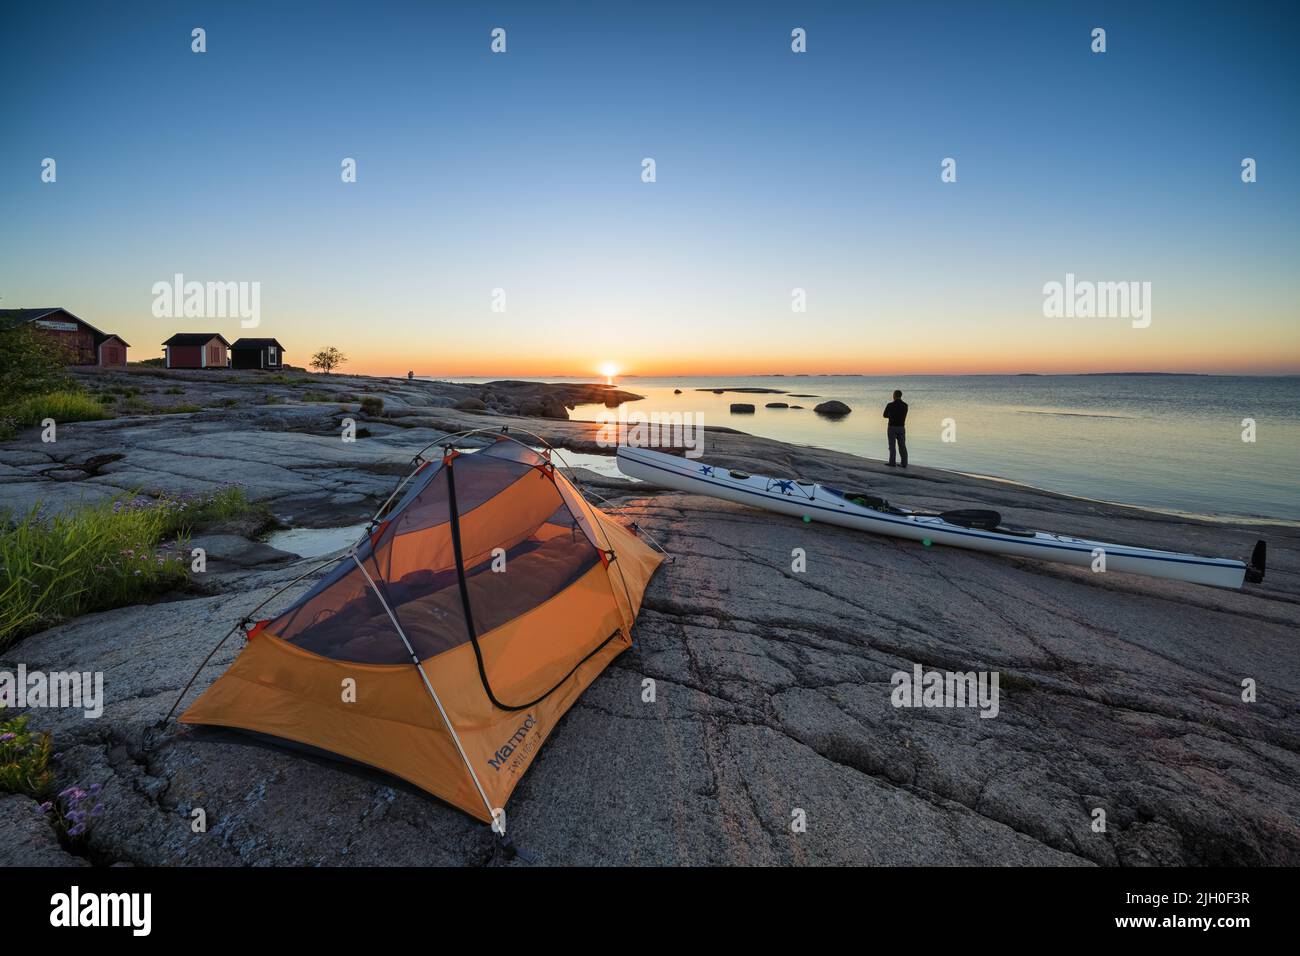 Kayaking and camping at Koivuluoto island, Hamina, Finland Stock Photo